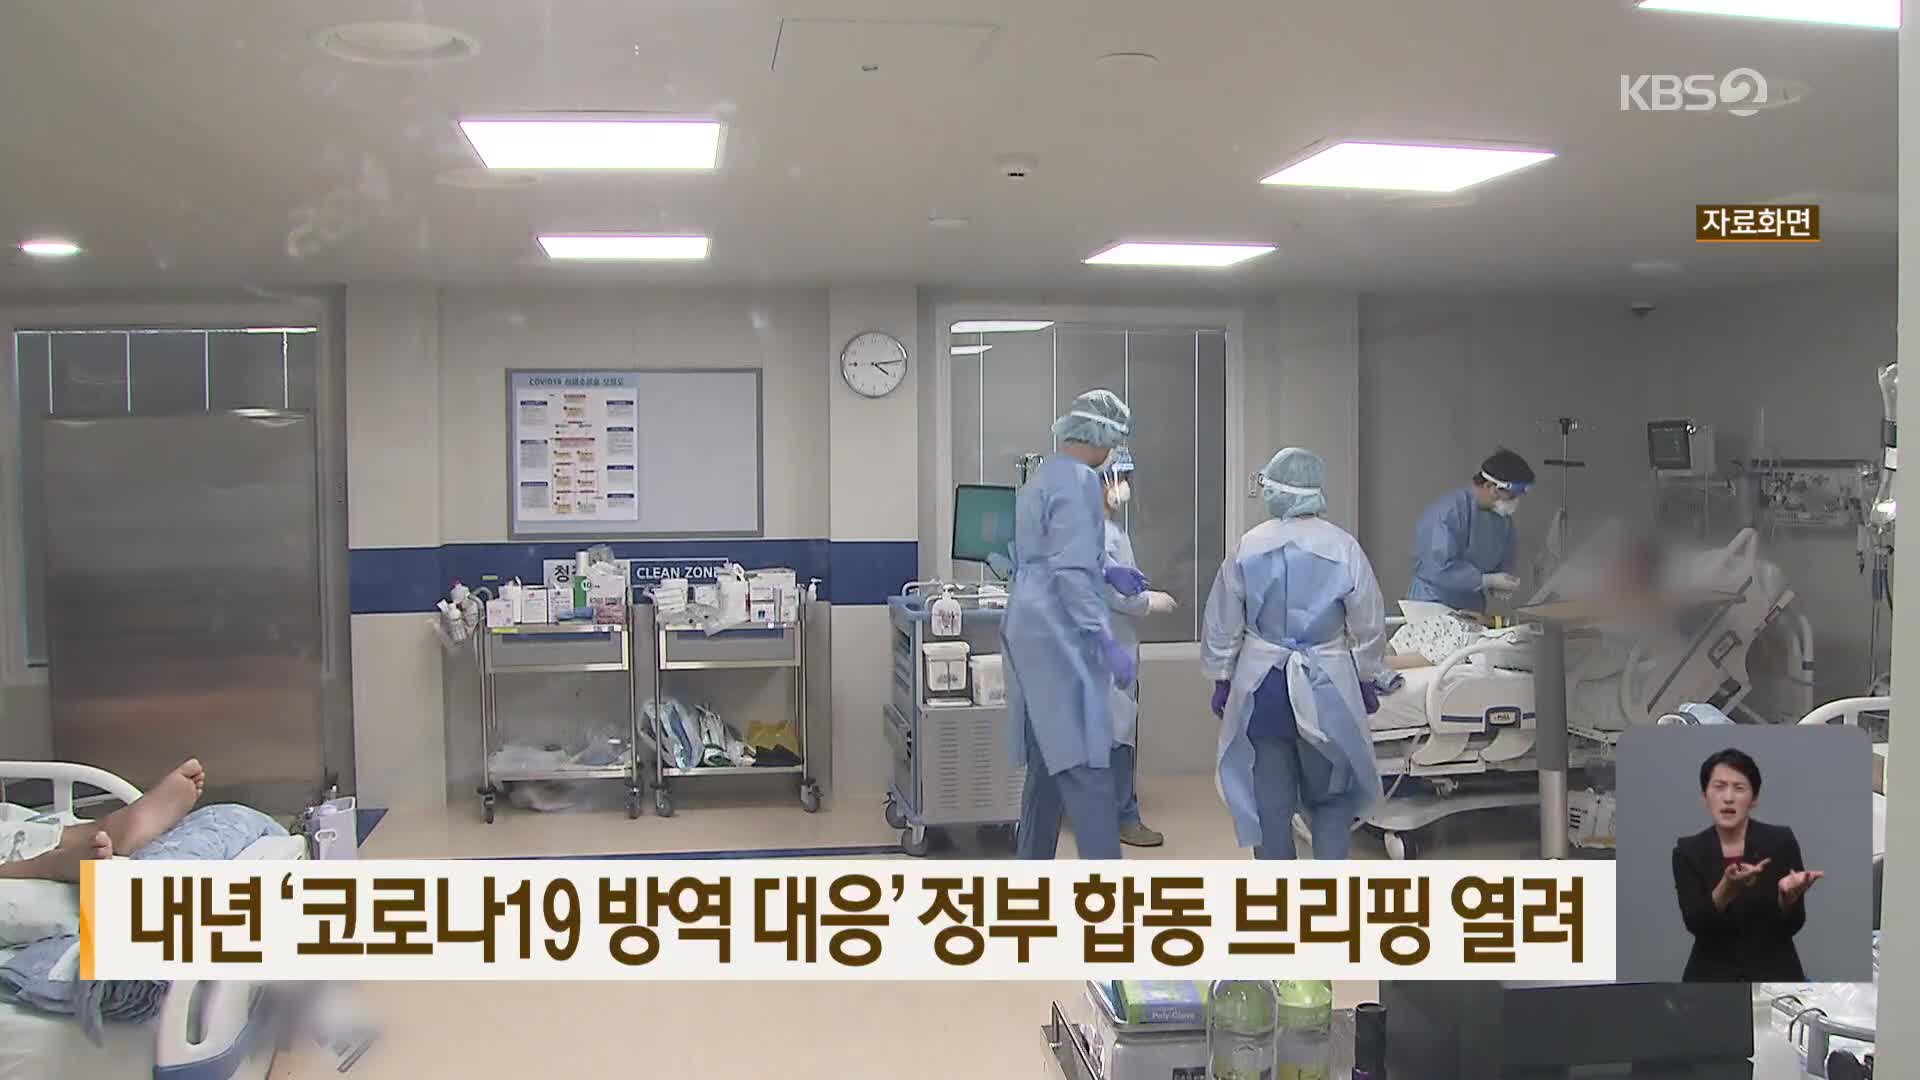 내년 ‘코로나19 방역 대응’ 정부 합동 브리핑 열려